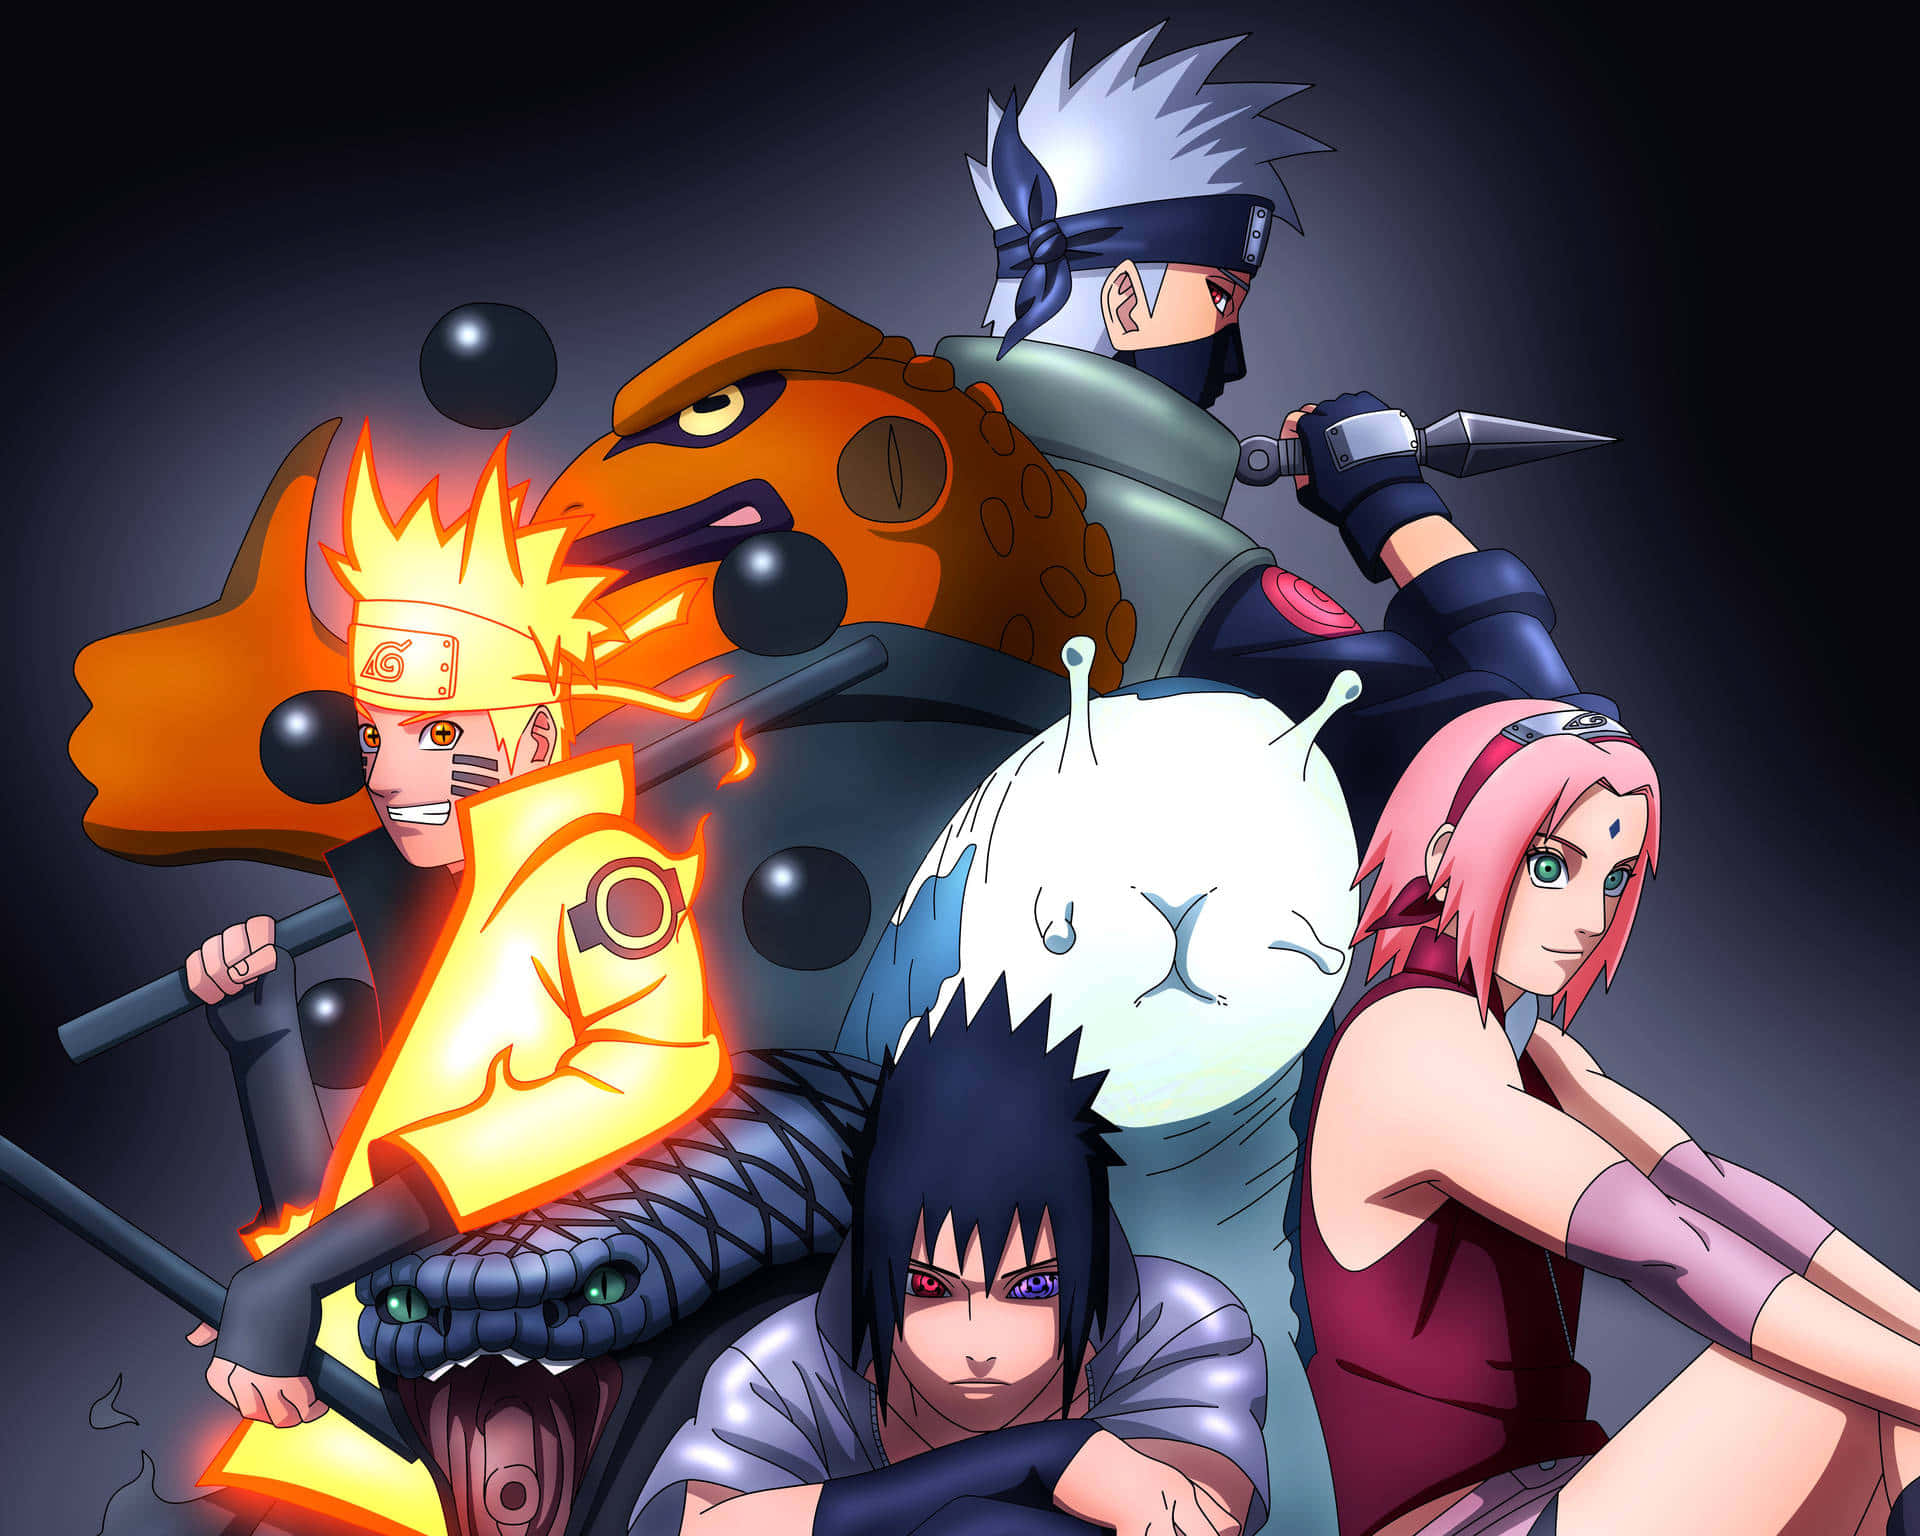 "Sasuke (Uchiha), Naruto (Uzumaki), and Sakura (Haruno) of Team 7 ready to take on their next mission!" Wallpaper